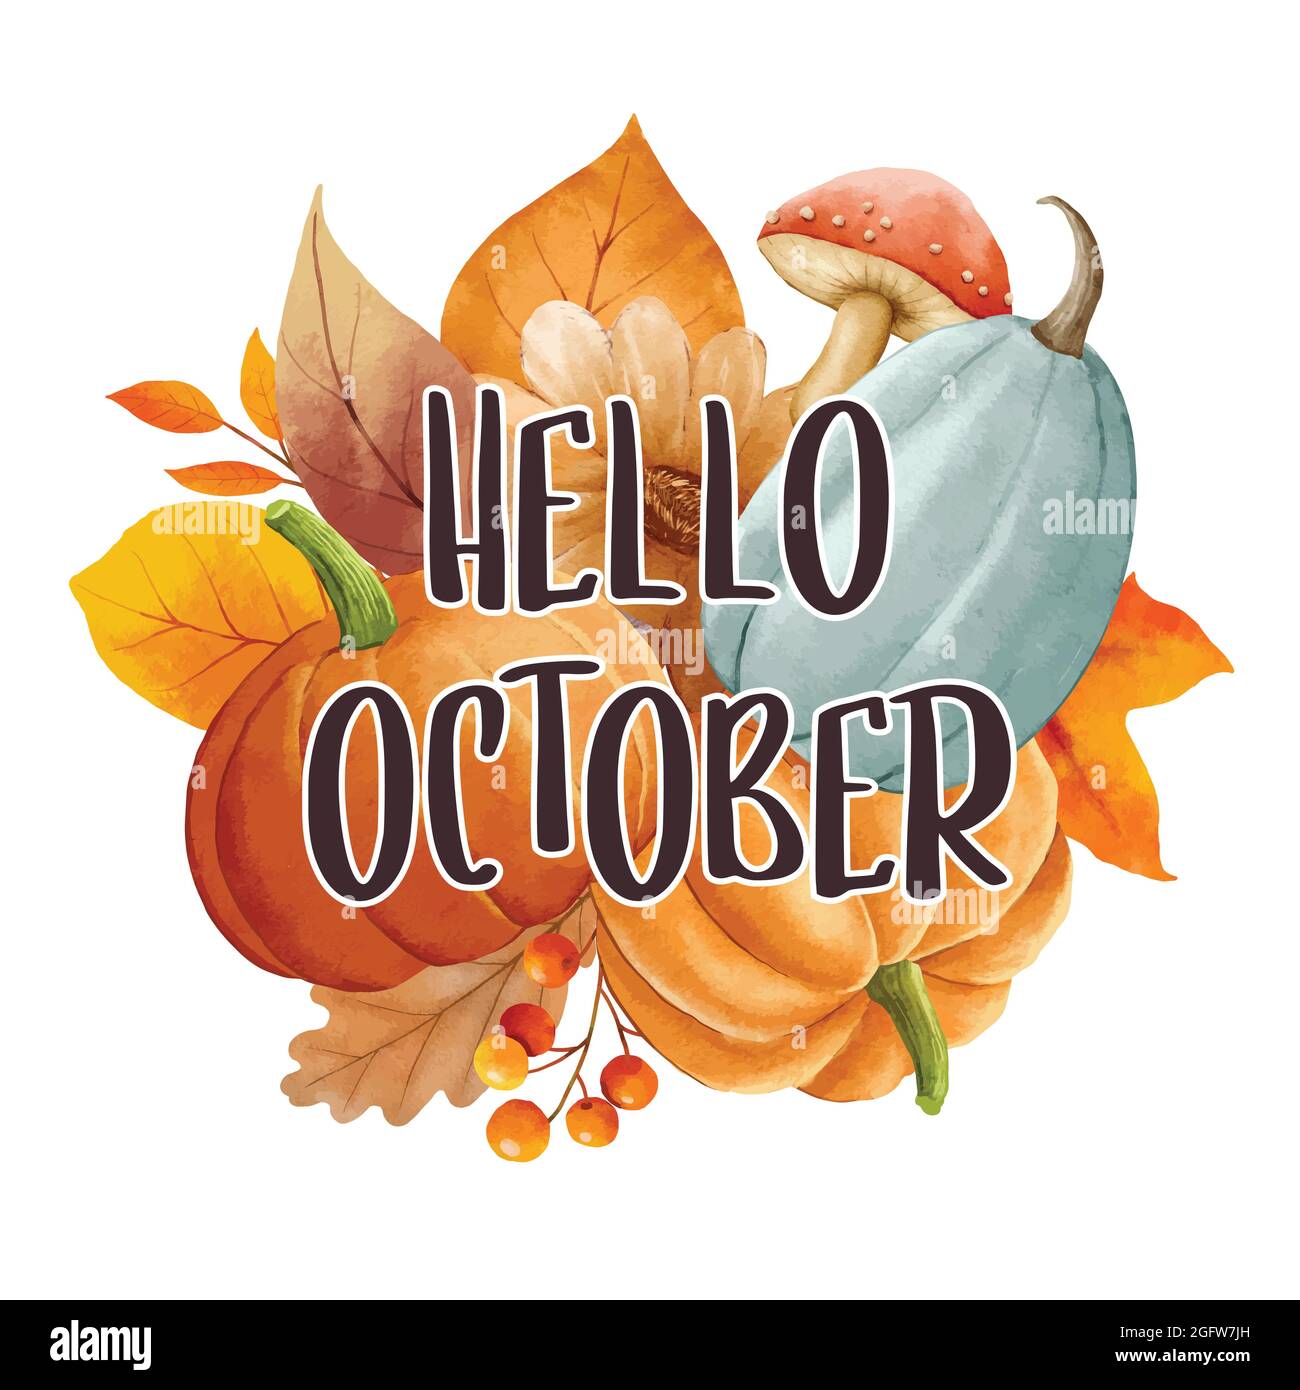 Hallo oktober mit reich verzierten Blättern Blume Hintergrund. Herbst oktober handgezeichnetes Design mit Schriftzügen. Stock Vektor